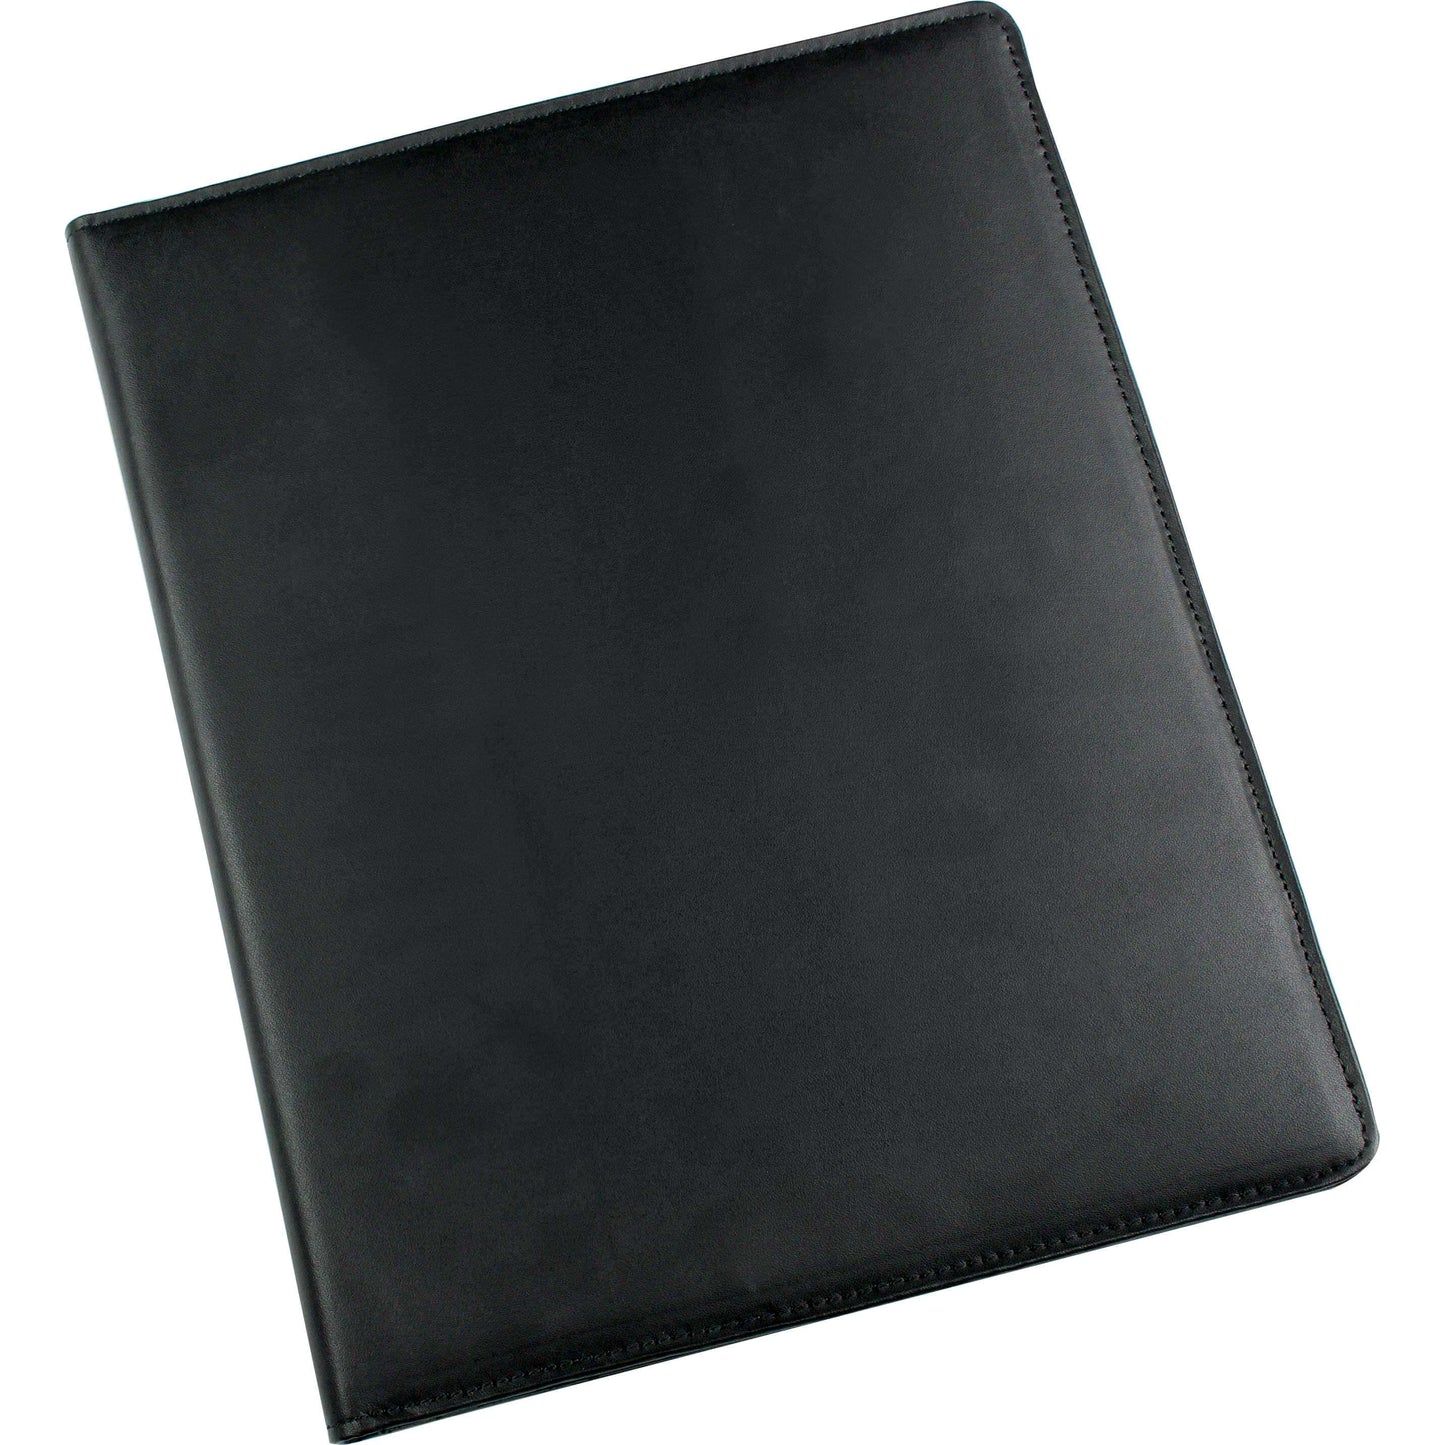 Conference Folder Leather - EL790L